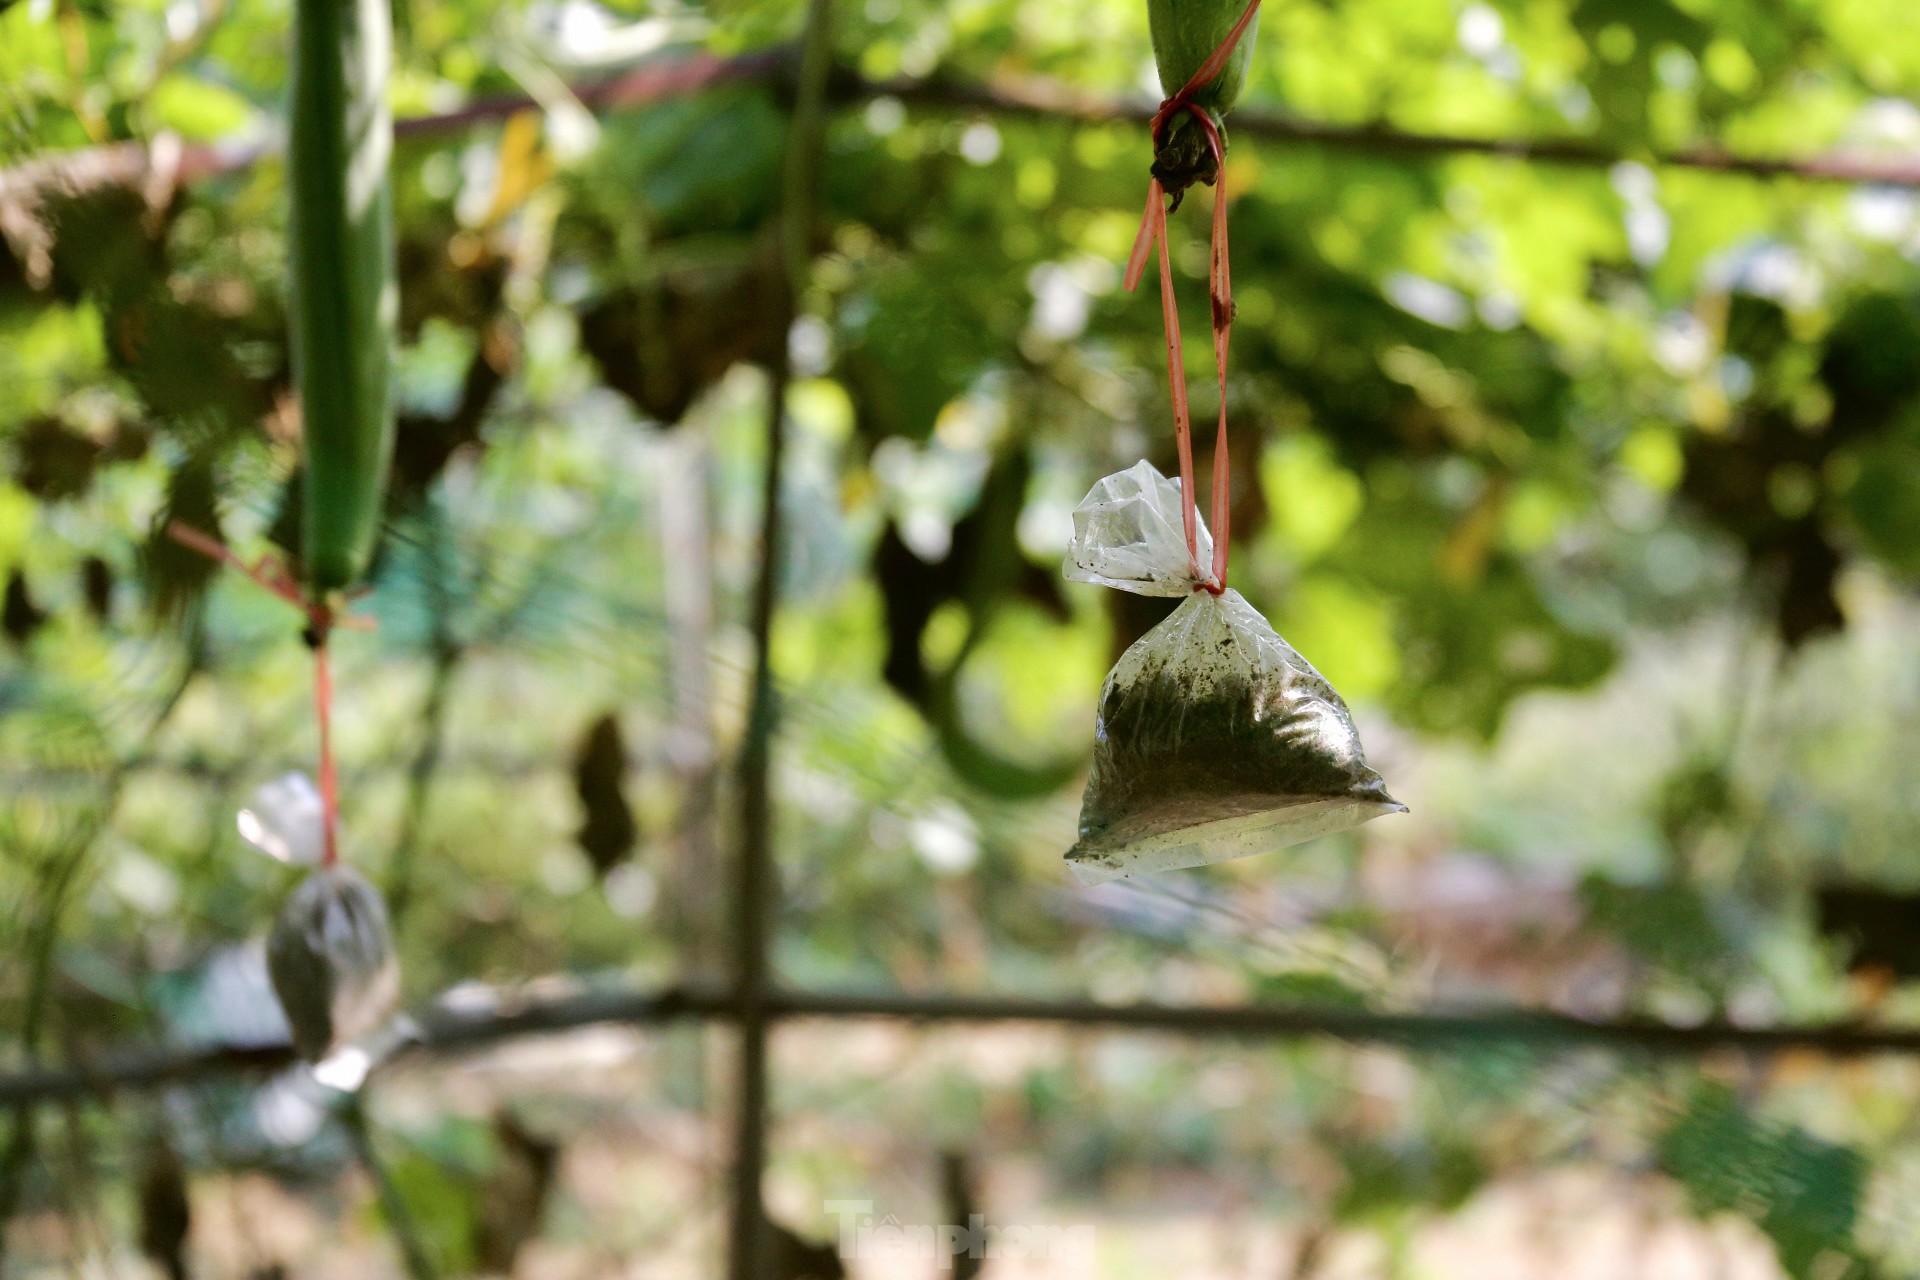 Nông dân ở làng rau này ở Đà Nẵng dùng "độc chiêu" giúp những vườn mướp của mình cho trái to, dài, thẳng tắp- Ảnh 8.